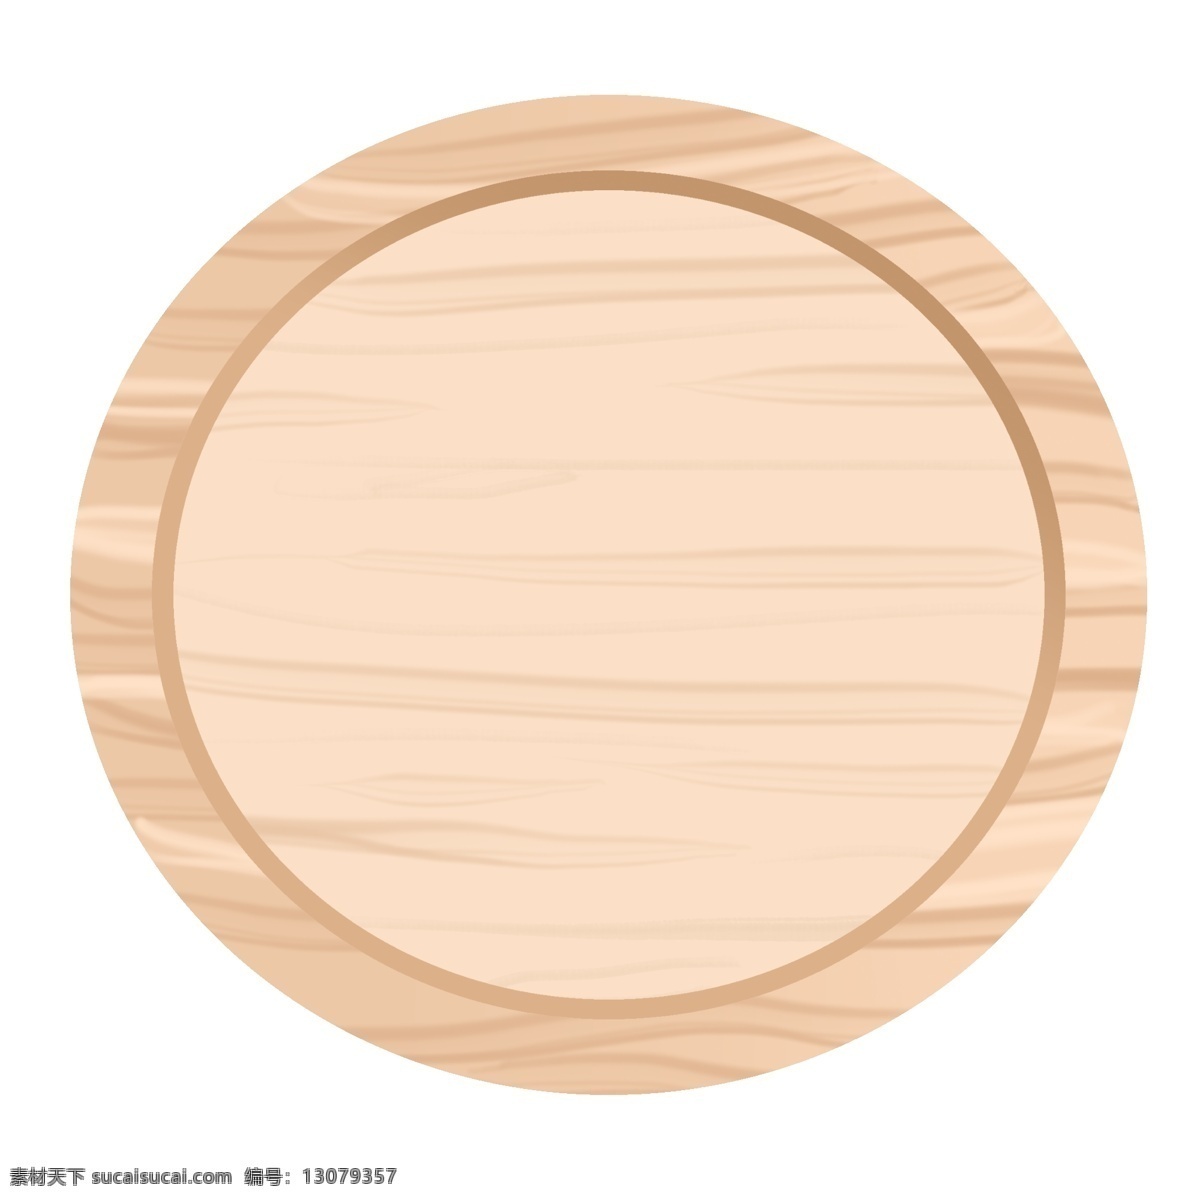 圆形 木质 牌子 插图 一块木牌子 木牌子 木头 实木 圆形木牌子 木质牌子插图 精致的木牌子